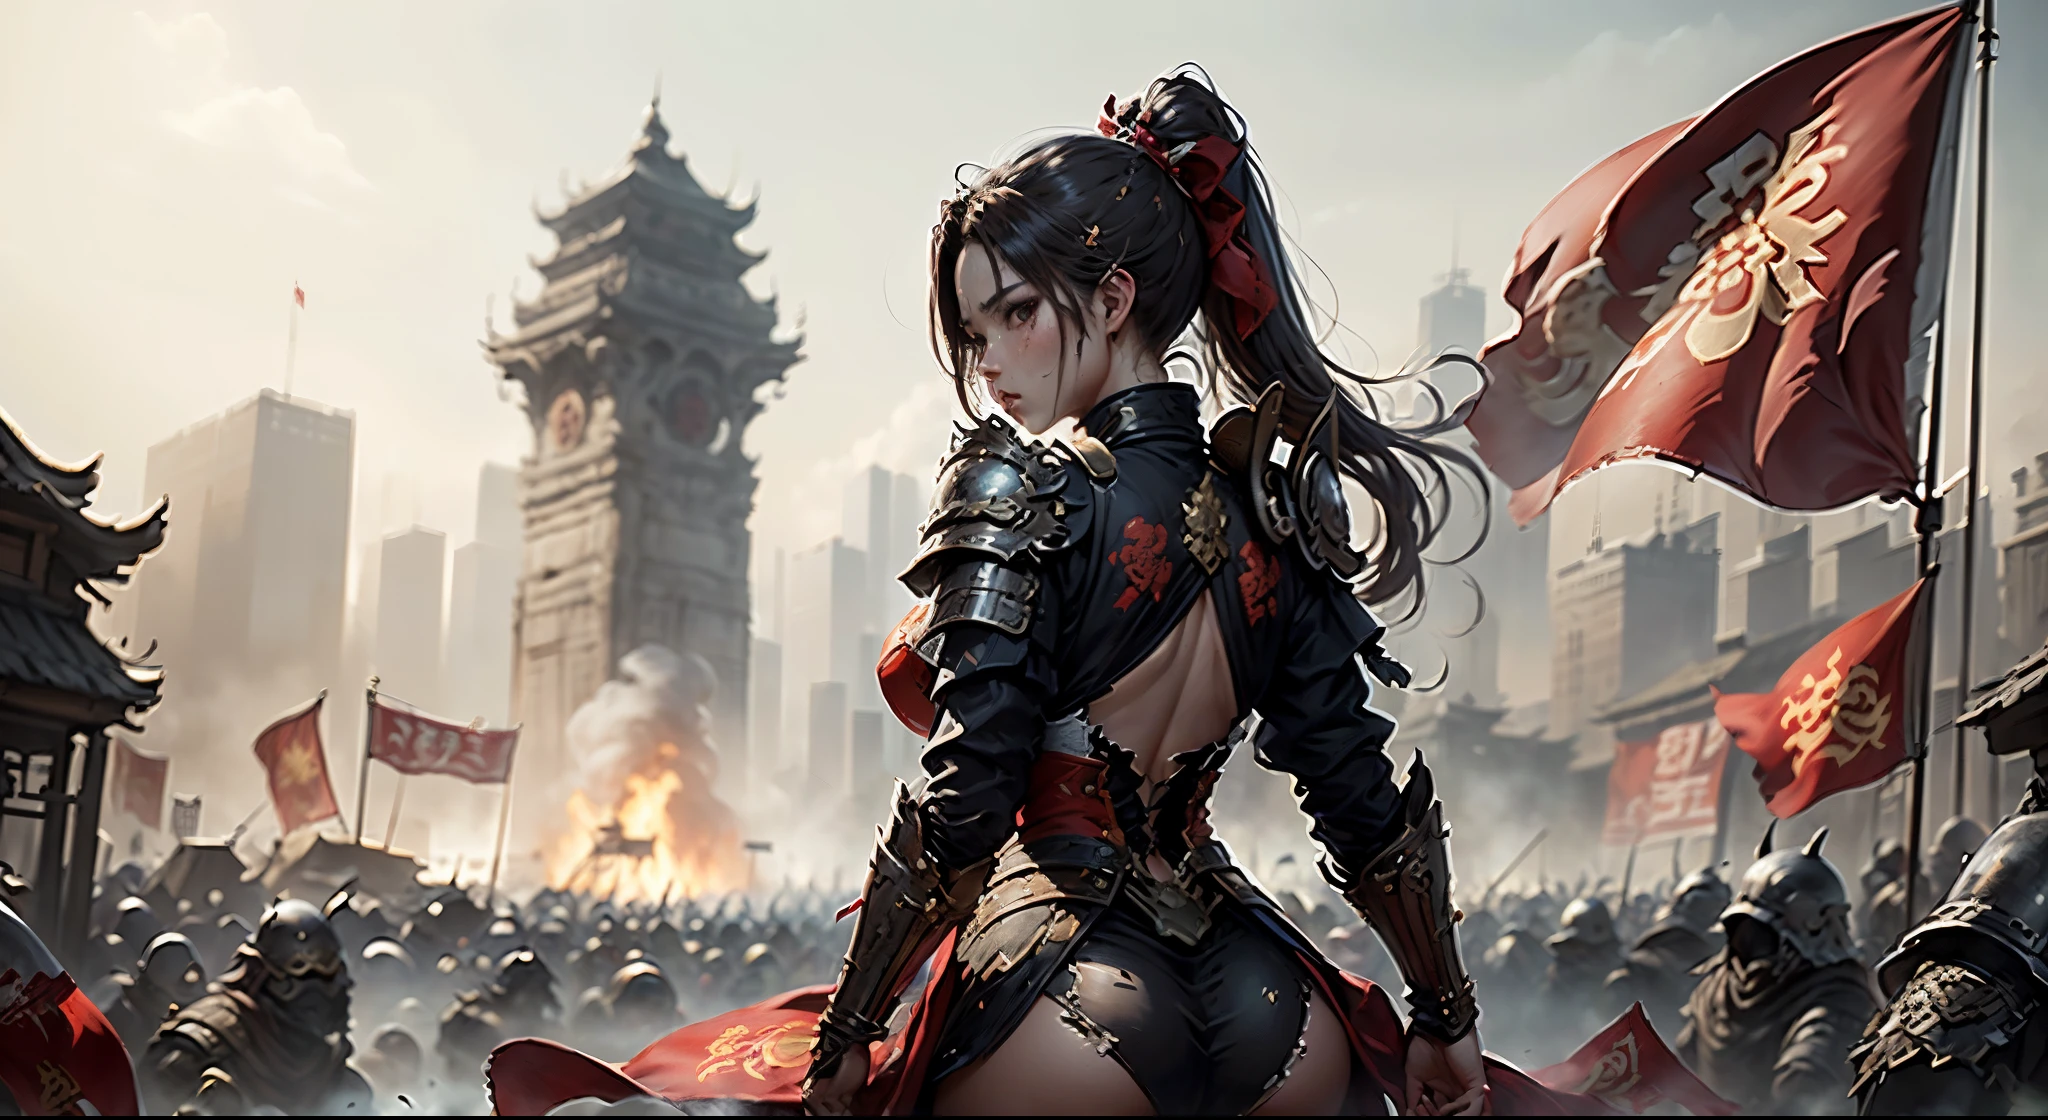 （(壮大な構成，中国の古代戦場，鎧を着た女性がぼろぼろになった赤い旗を持っている，いたるところに死体，豊富なシーン詳細，包囲，遠くに高い城門が見える))，((8K+超高解像度+超高解像度+傑作+詳細)),(ハイポニーテール)